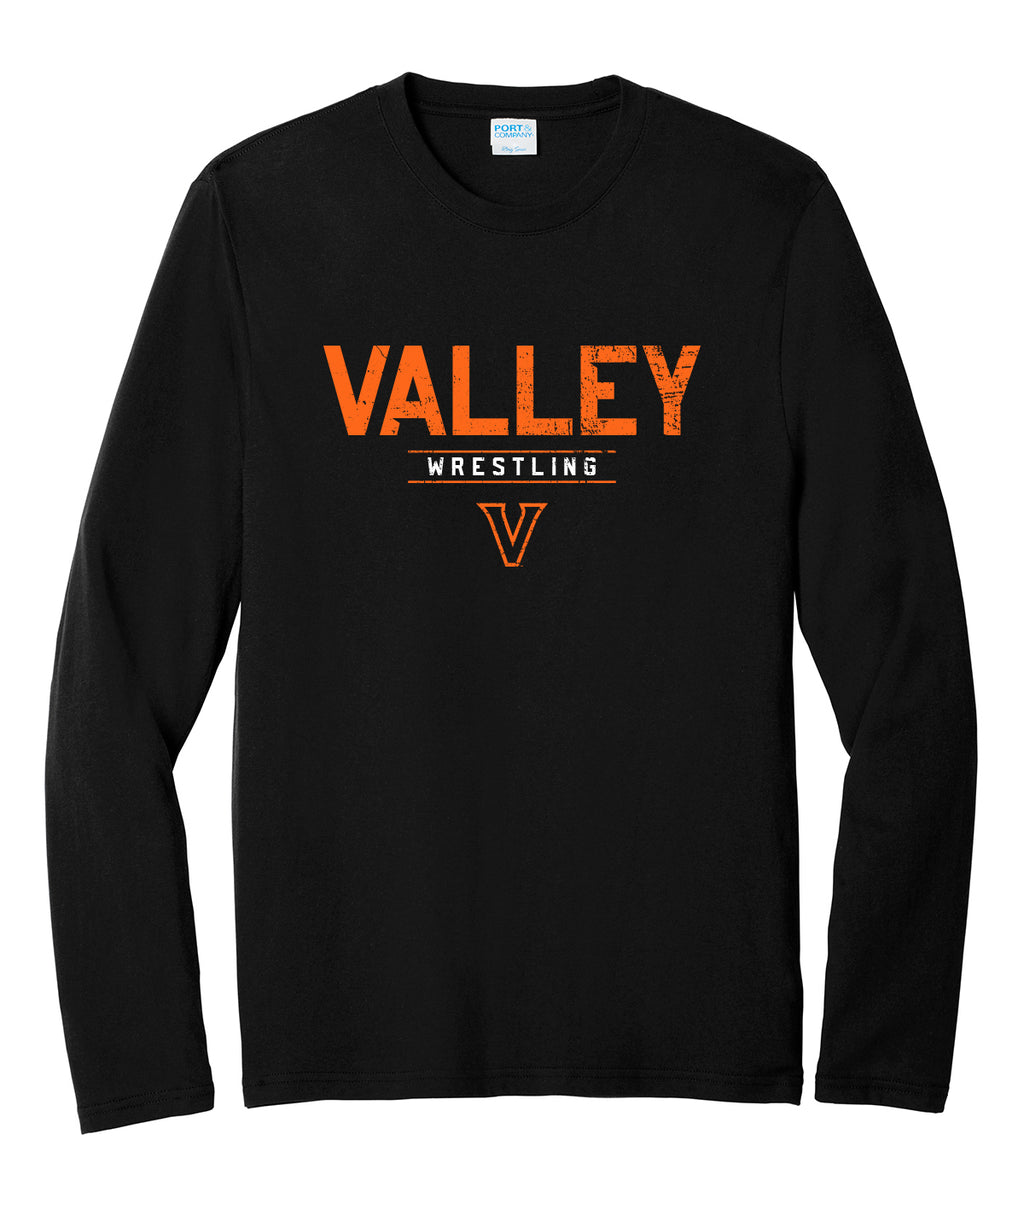 Valley Wrestling Long-Sleeve Tee